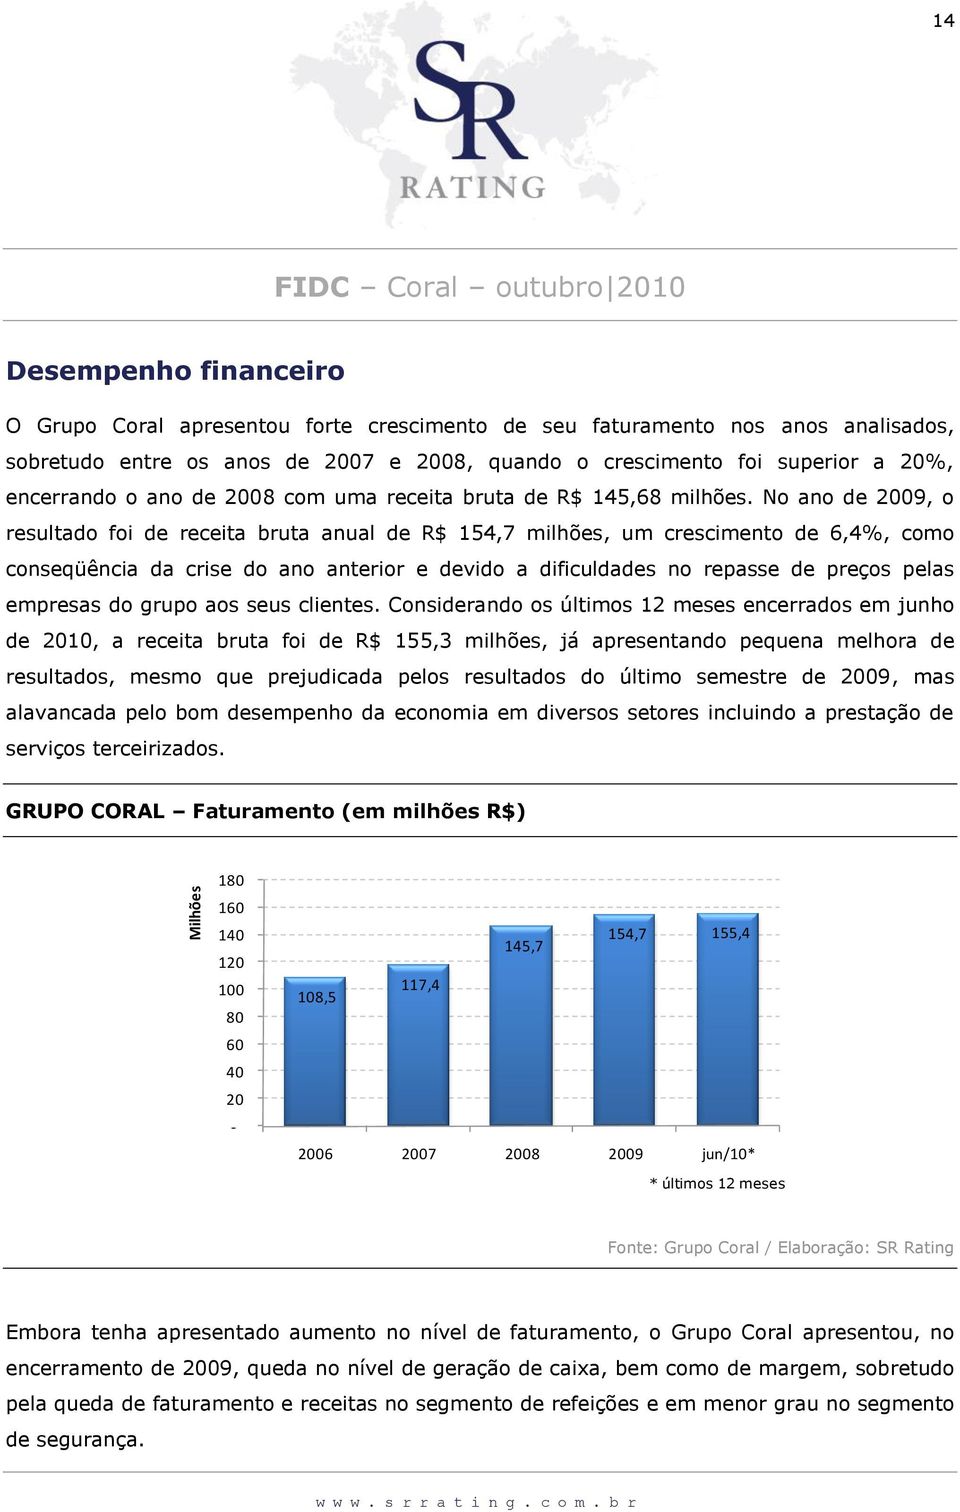 No ano de 2009, o resultado foi de receita bruta anual de R$ 154,7 milhões, um crescimento de 6,4%, como conseqüência da crise do ano anterior e devido a dificuldades no repasse de preços pelas